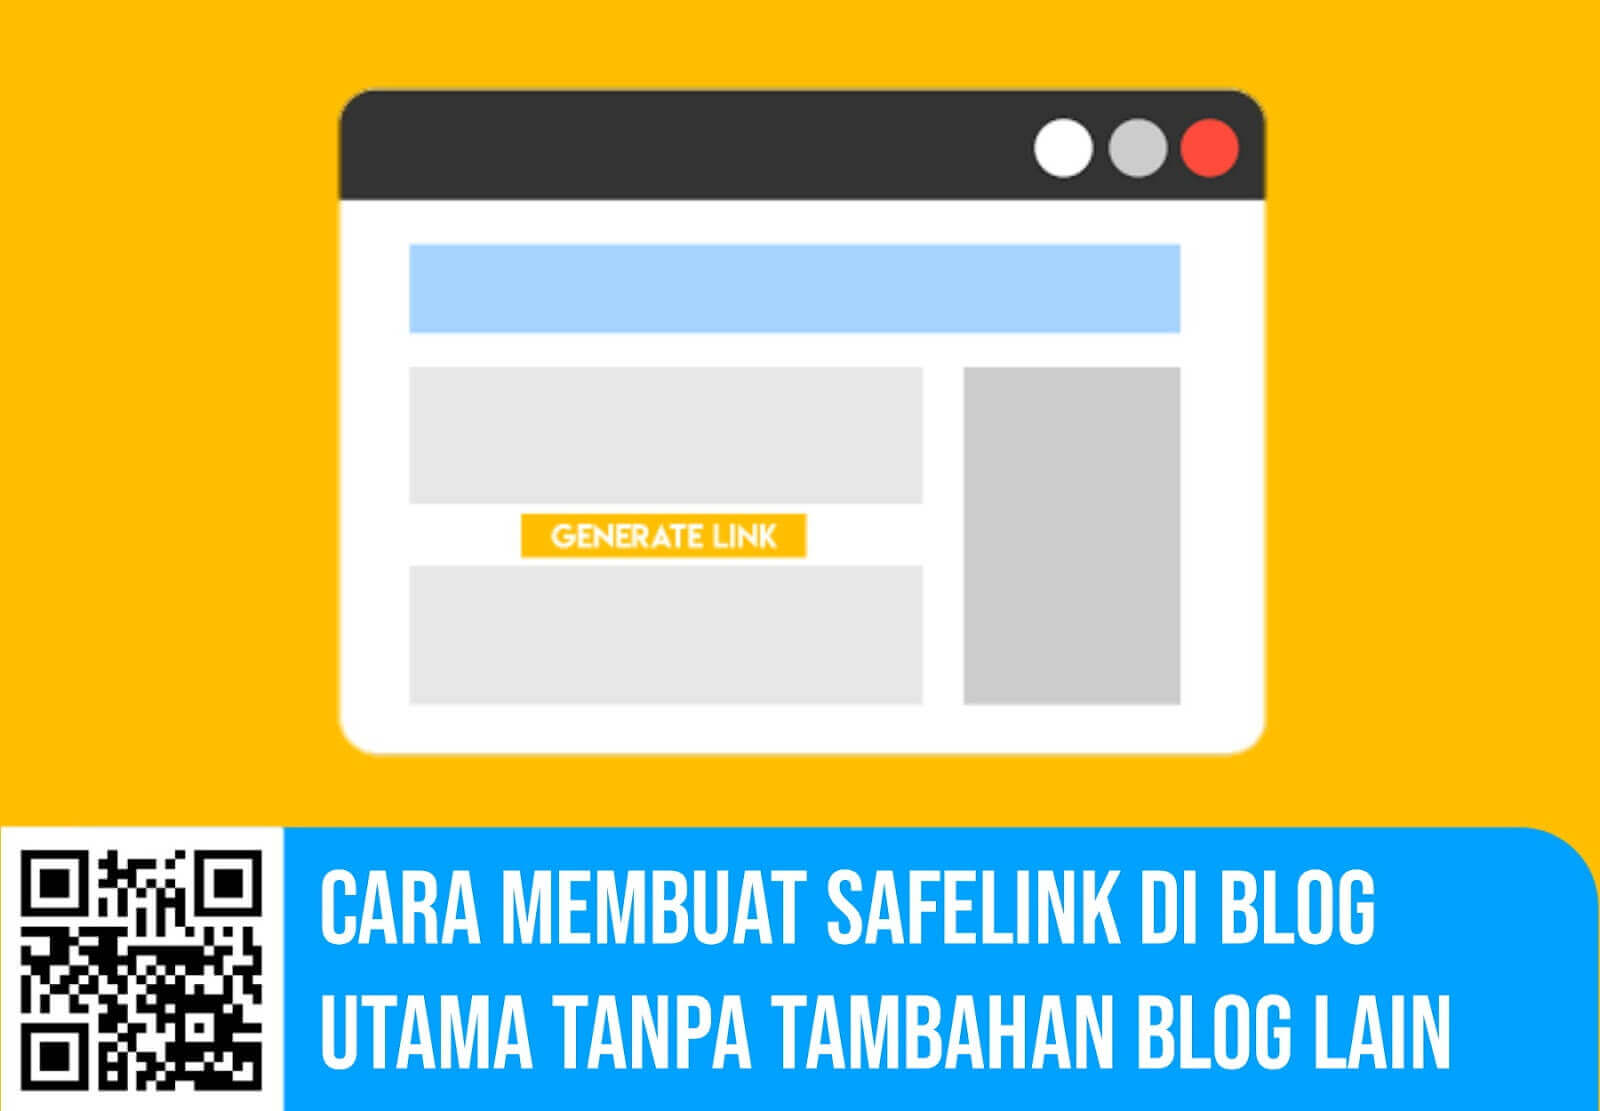 Cara Membuat Safelink di Blog Utama Tanpa Tambahan Blog Lain √  Cara Membuat Safelink di Blog Utama Tanpa Tambahan Blog Lain